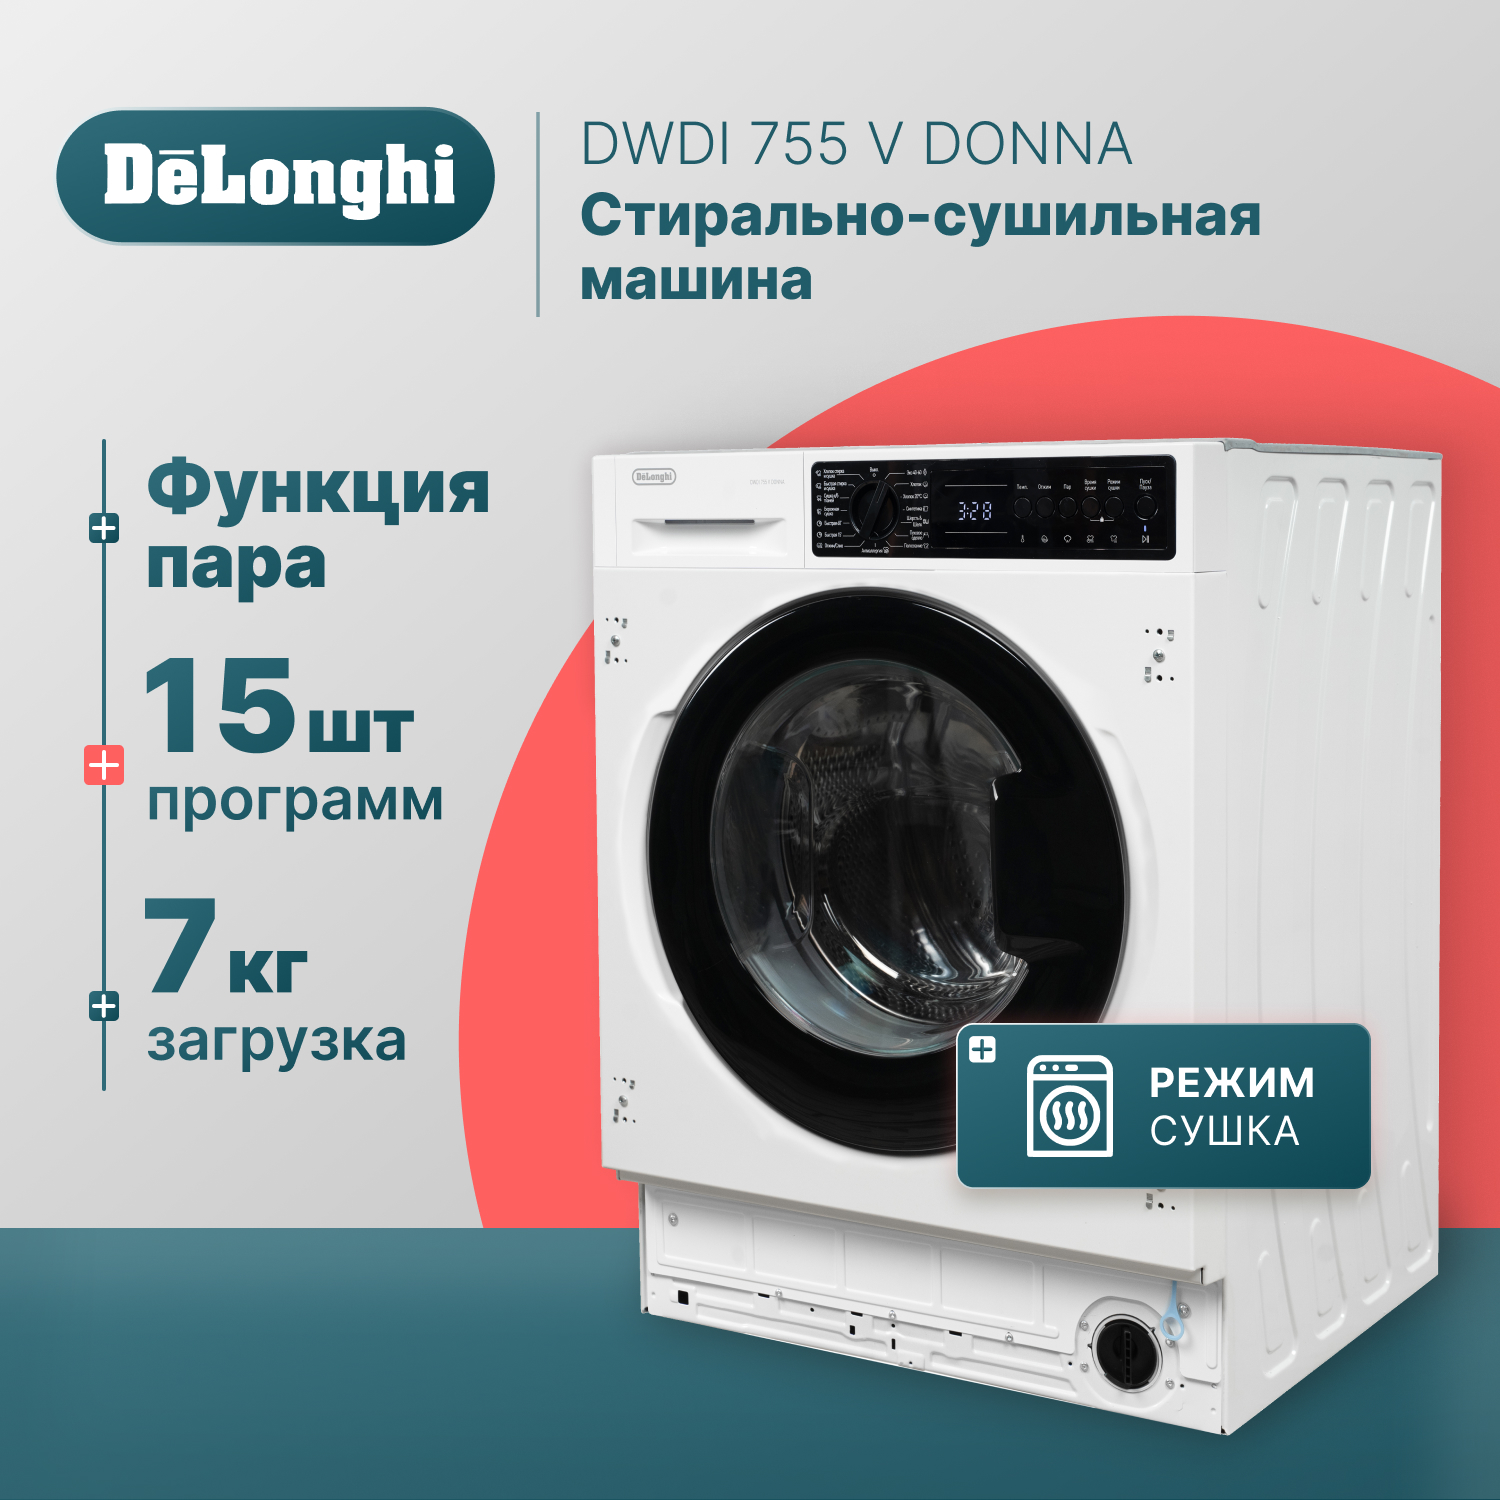 одеяло легкое 140x205 см файберсофт Встраиваемая стиральная машина Delonghi DWDI 755 V DONNA